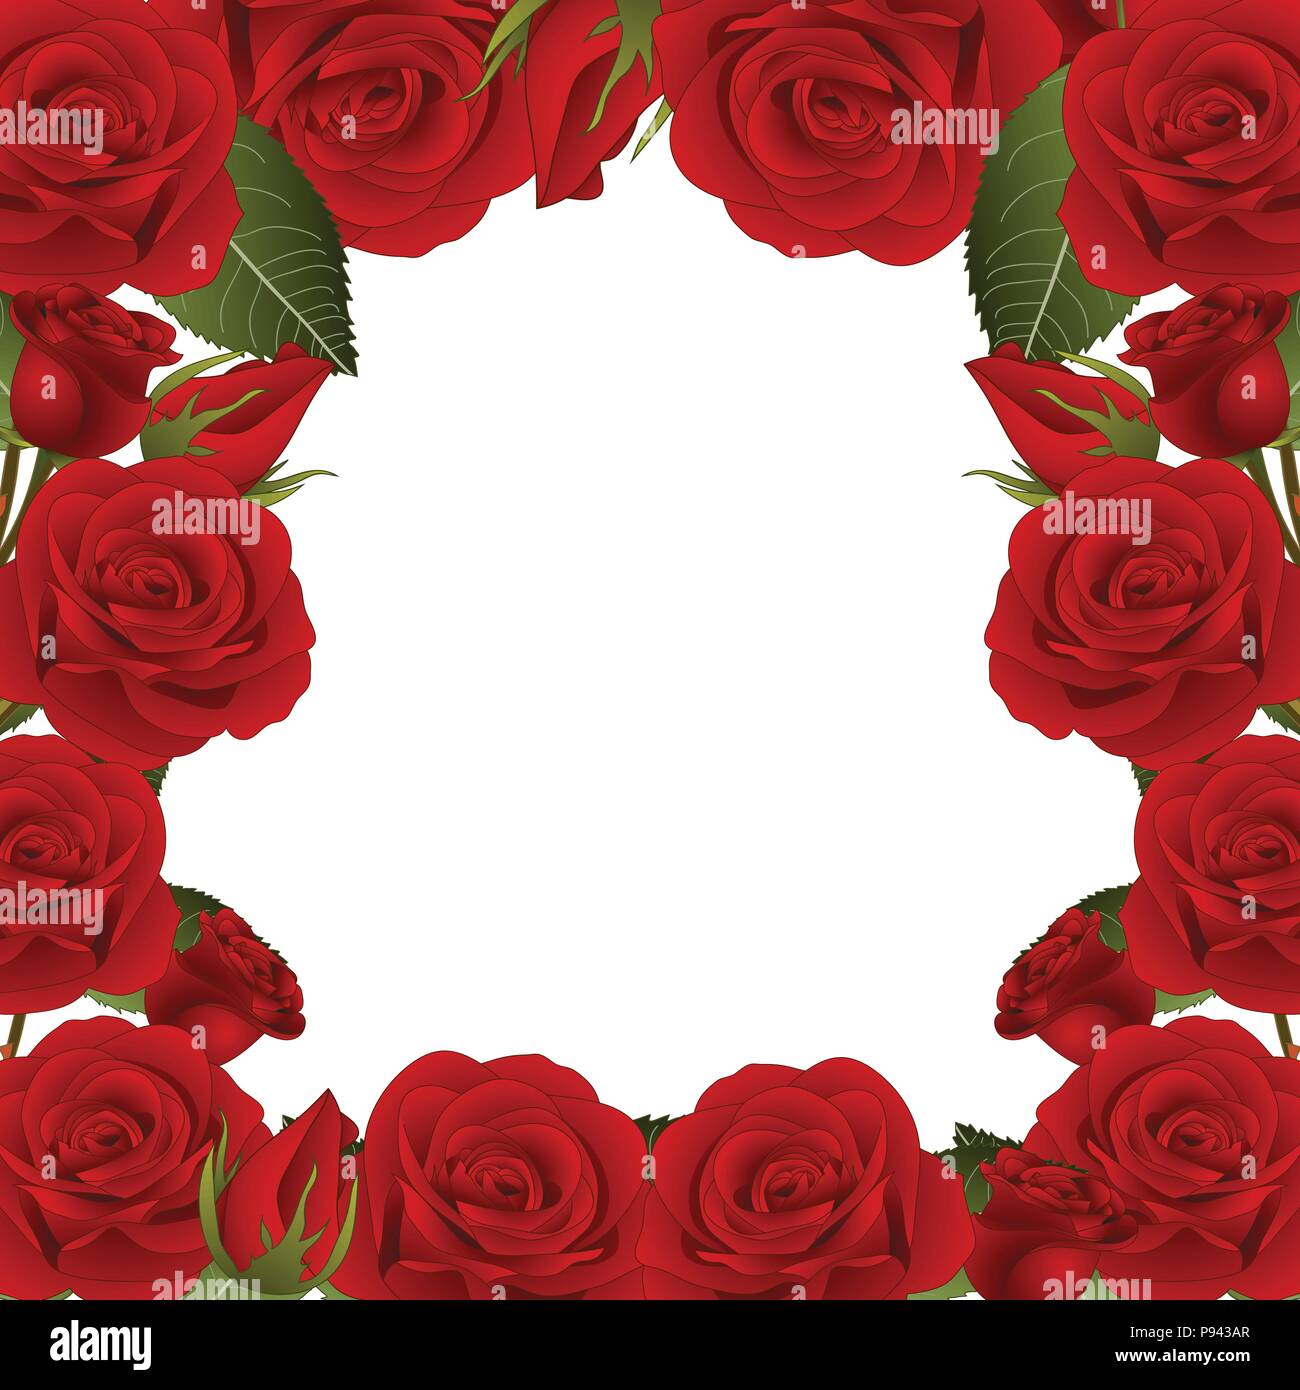 Red Rose Flower Frame Border. isolated on White Background. Vector  Illustration Stock Vector Image & Art - Alamy